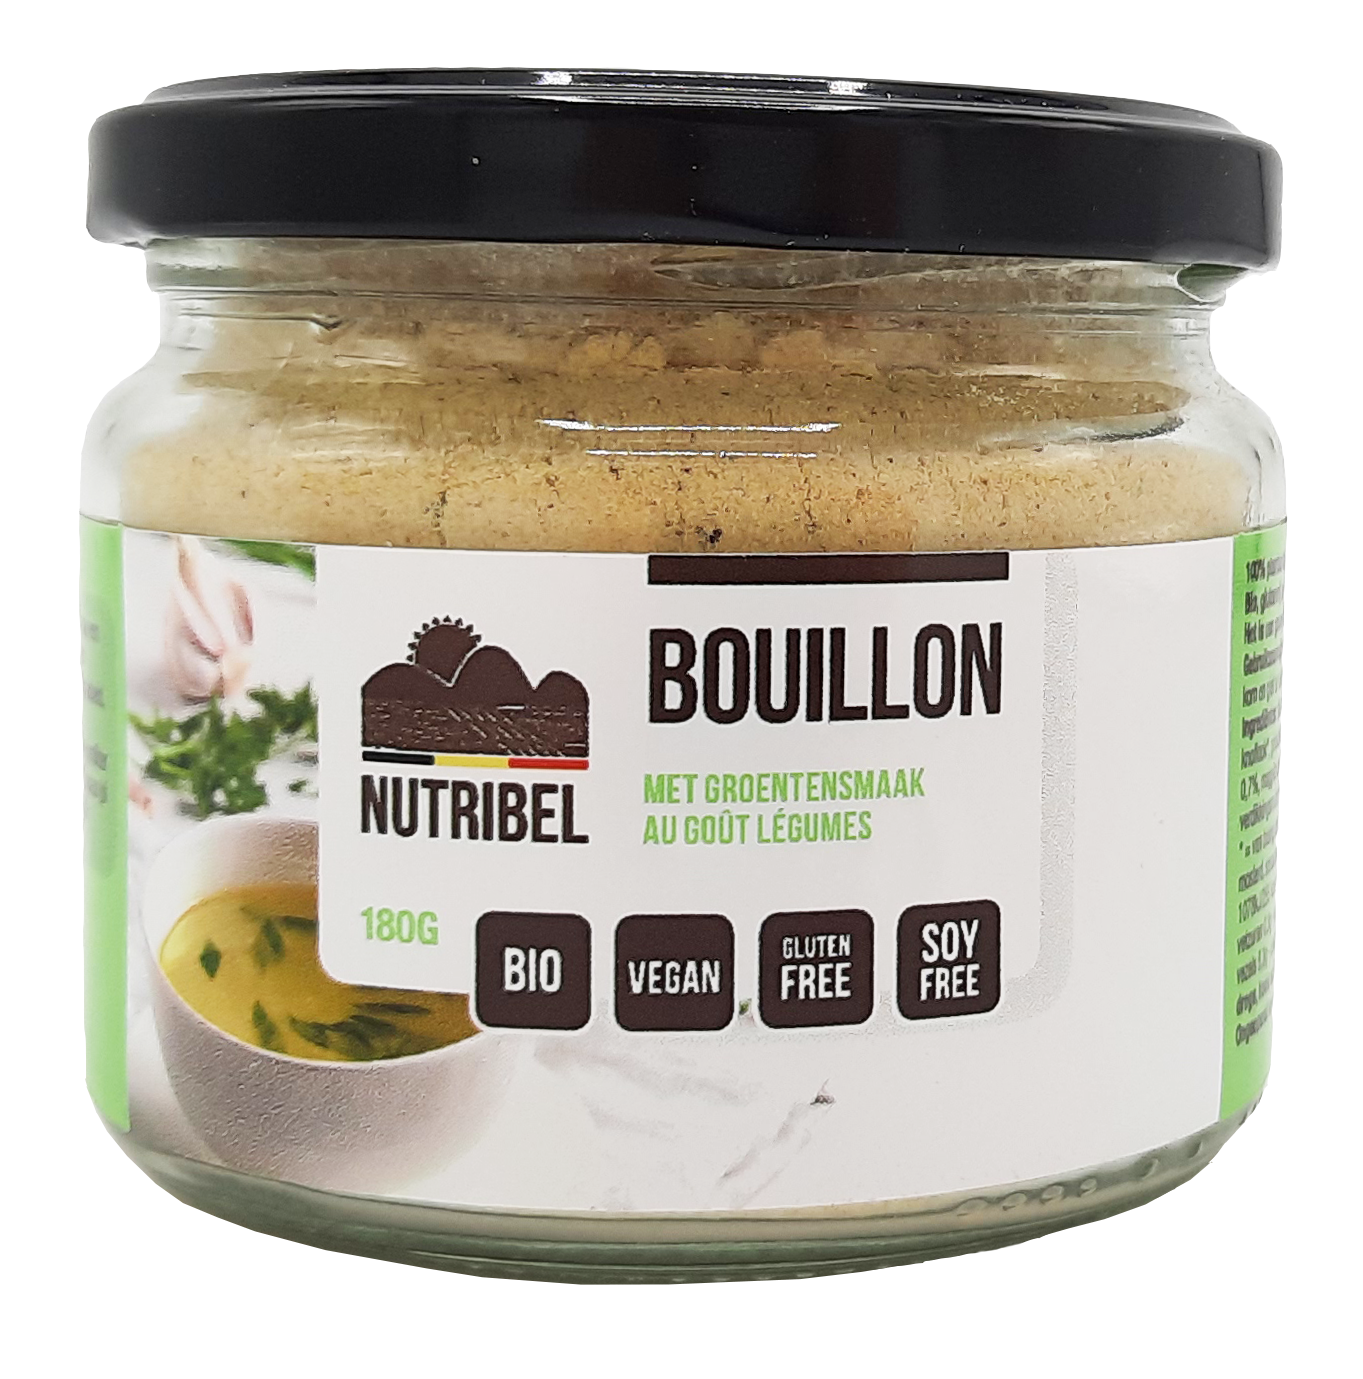 Nutribel Bouillon instant groenten vegan bio 180g